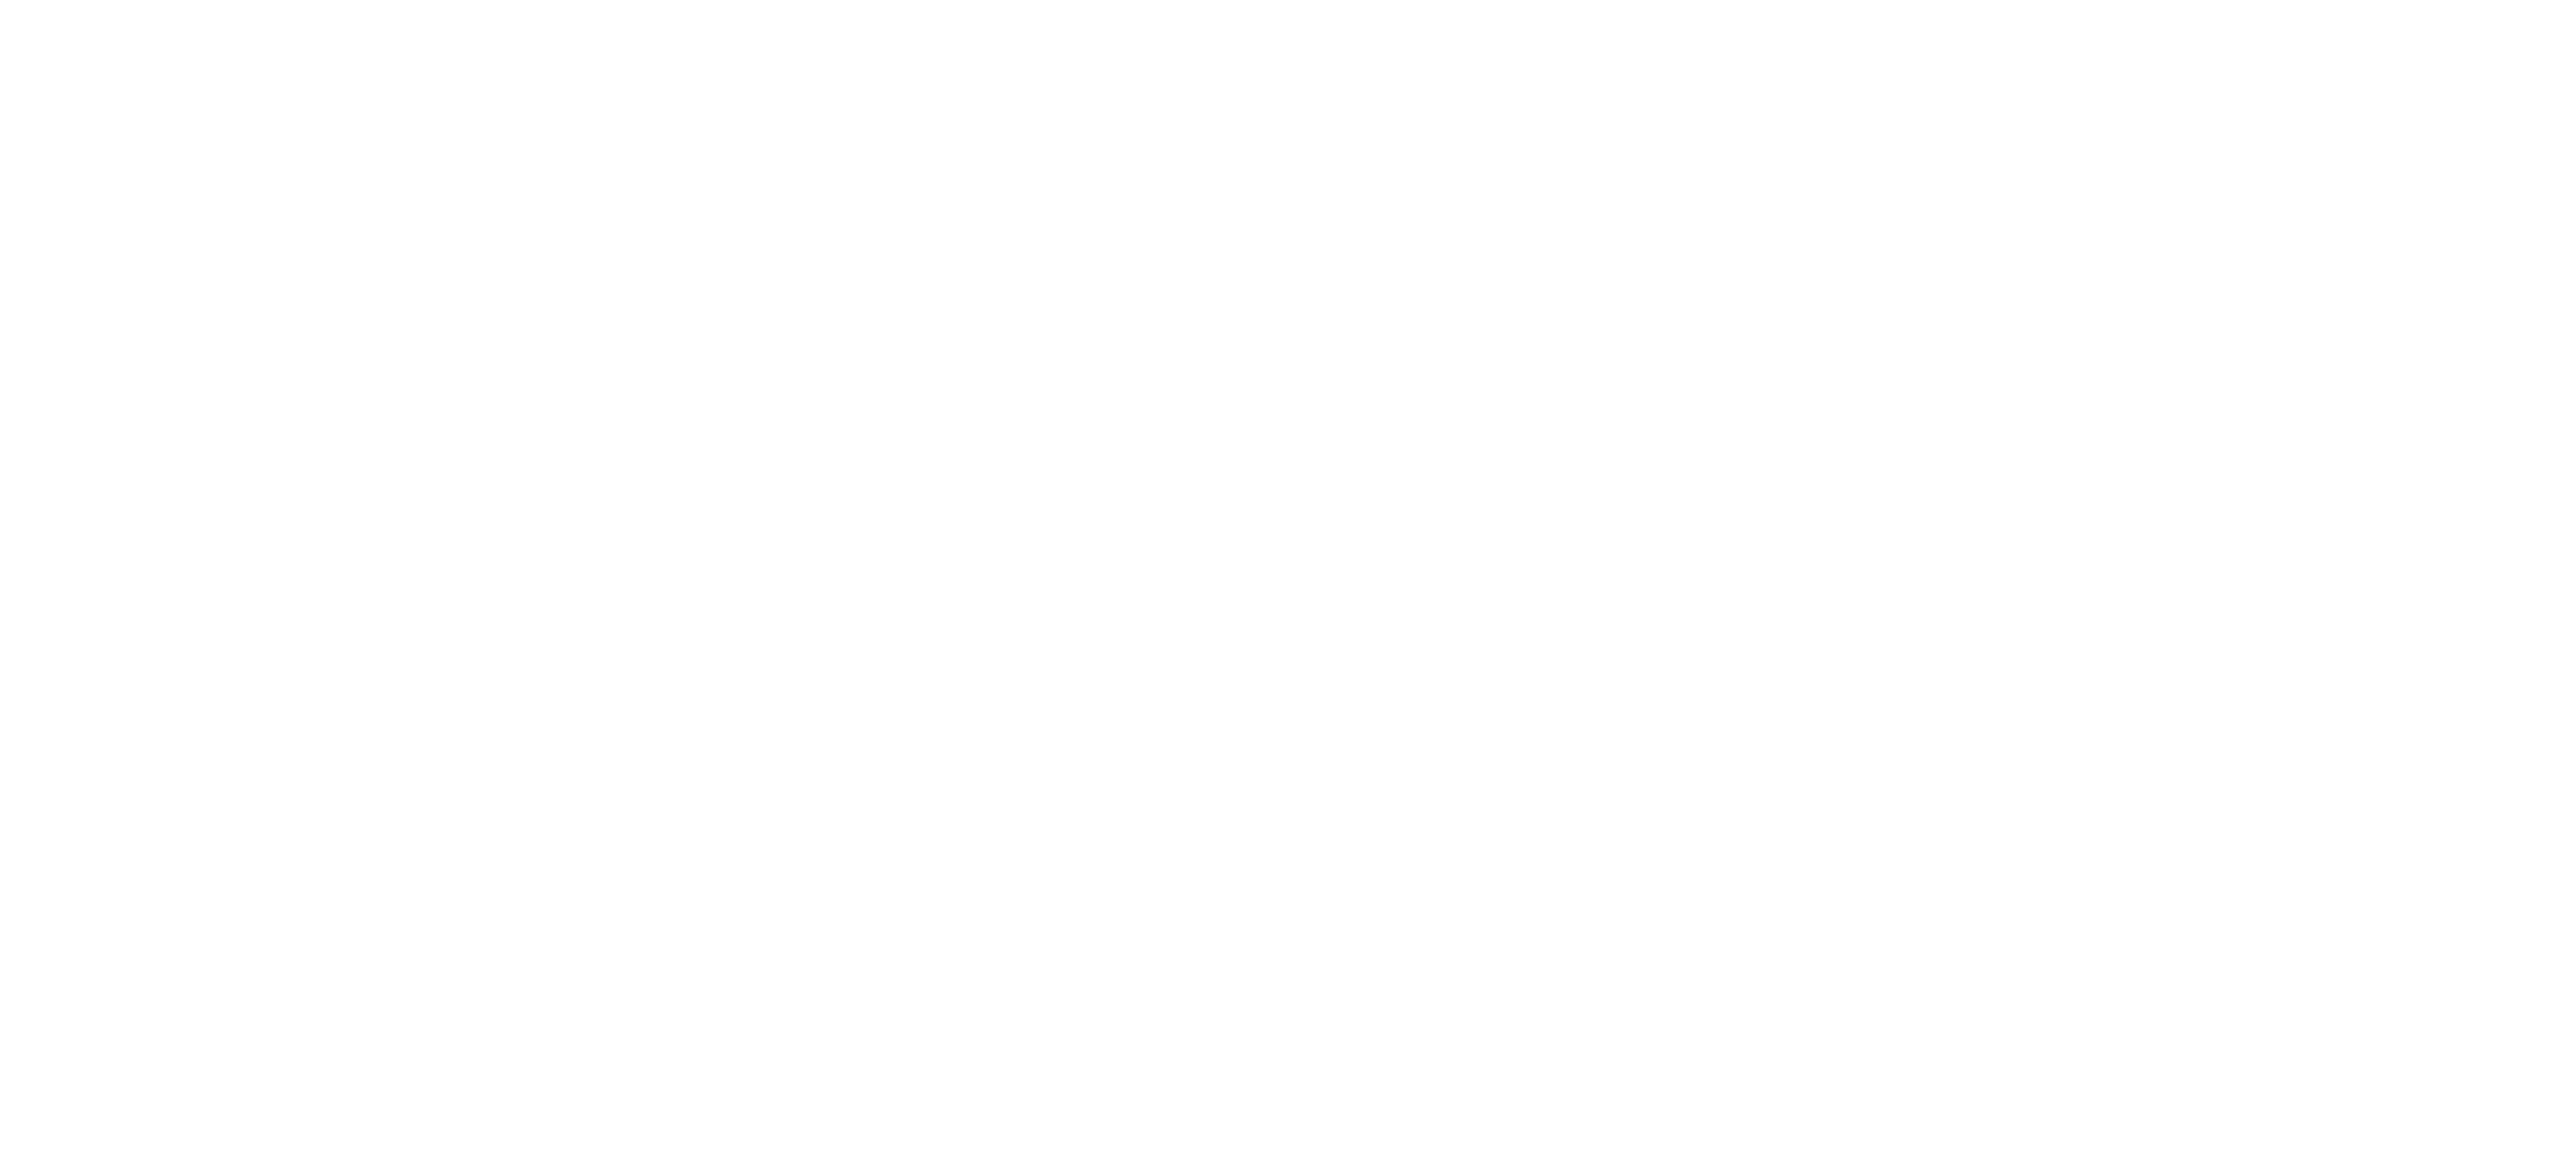 Barrett Summit